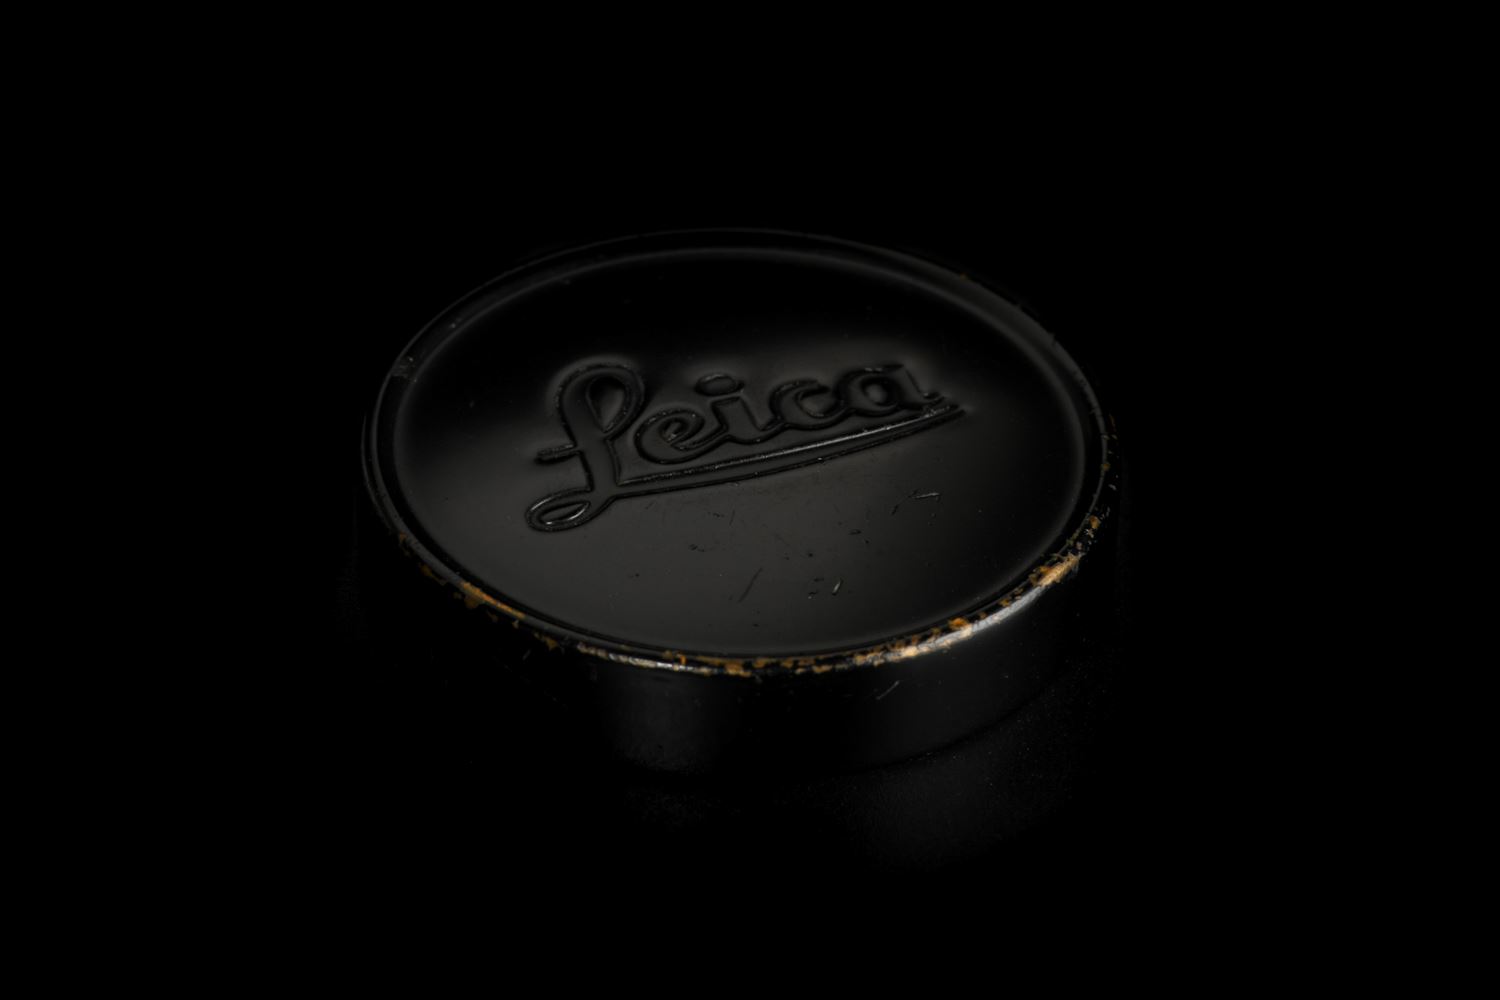 Picture of Leica A42 Black Paint Lens Cap